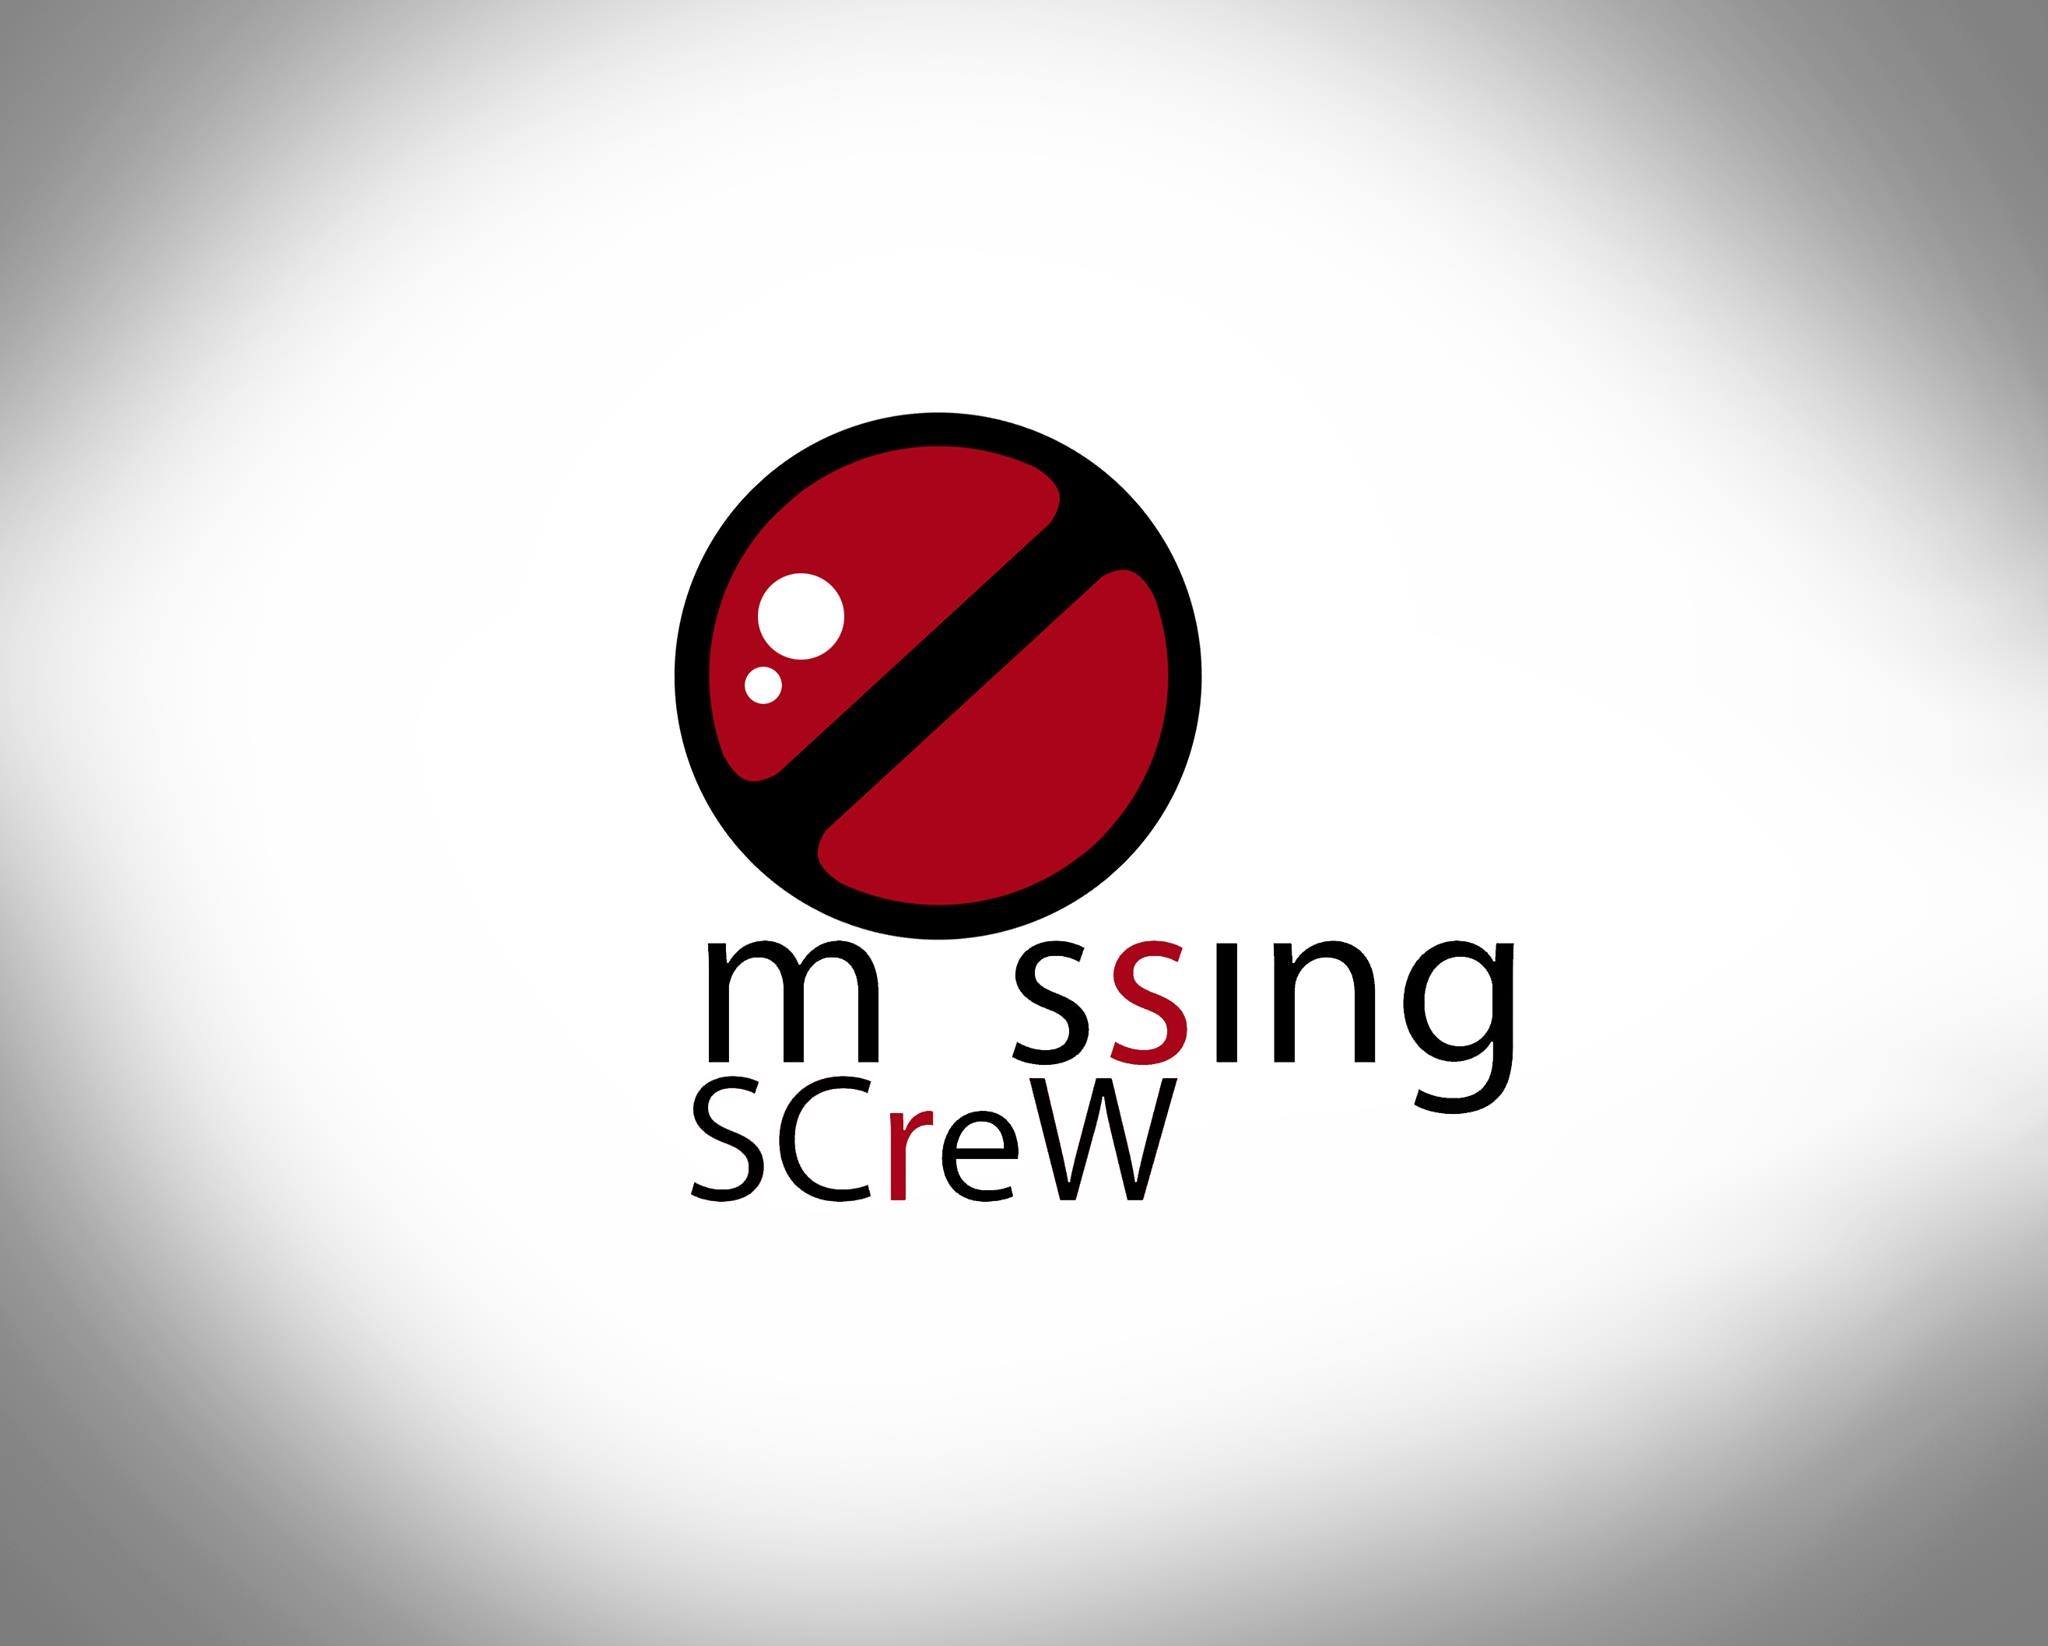 Missing Screw